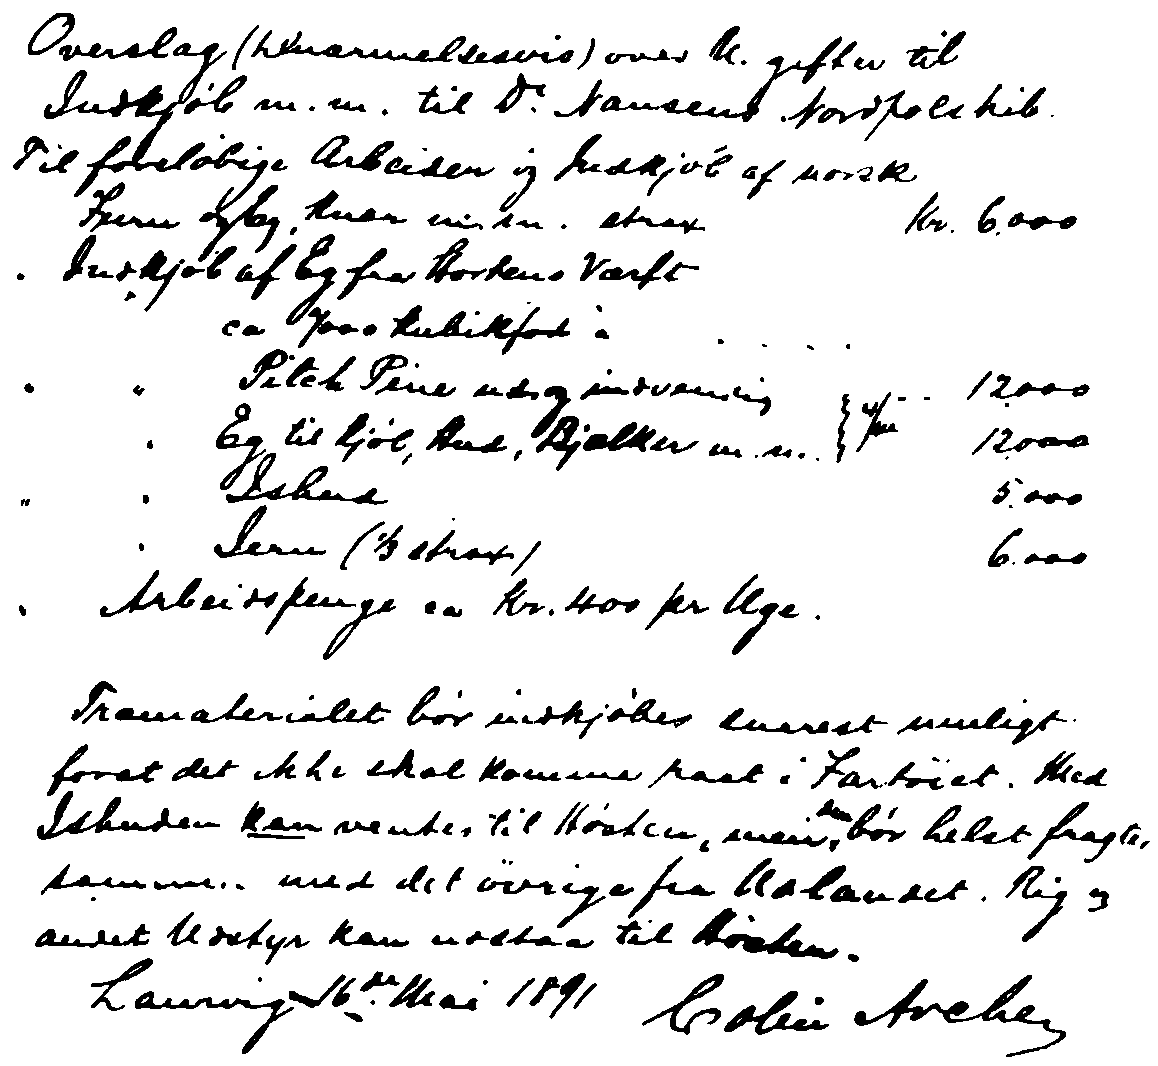 Первая прикидочная смета расходов на материалы для «Фрама», составленная Колином Арчером. Письмо от 16.05.1891